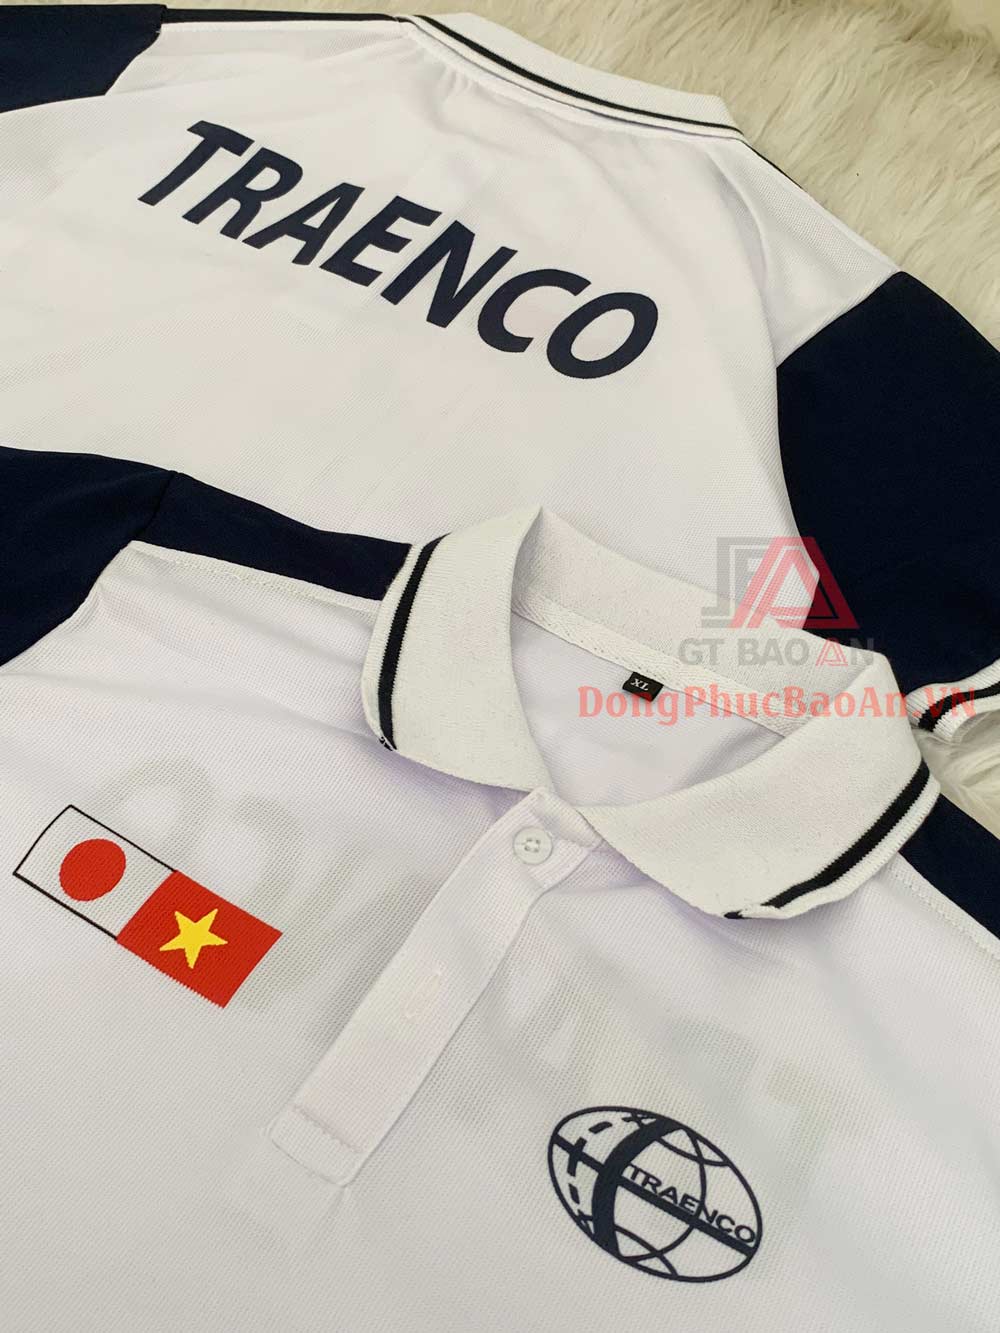 Mẫu áo đồng phục công ty đẹp và in logo theo yêu cầu TRAENCO